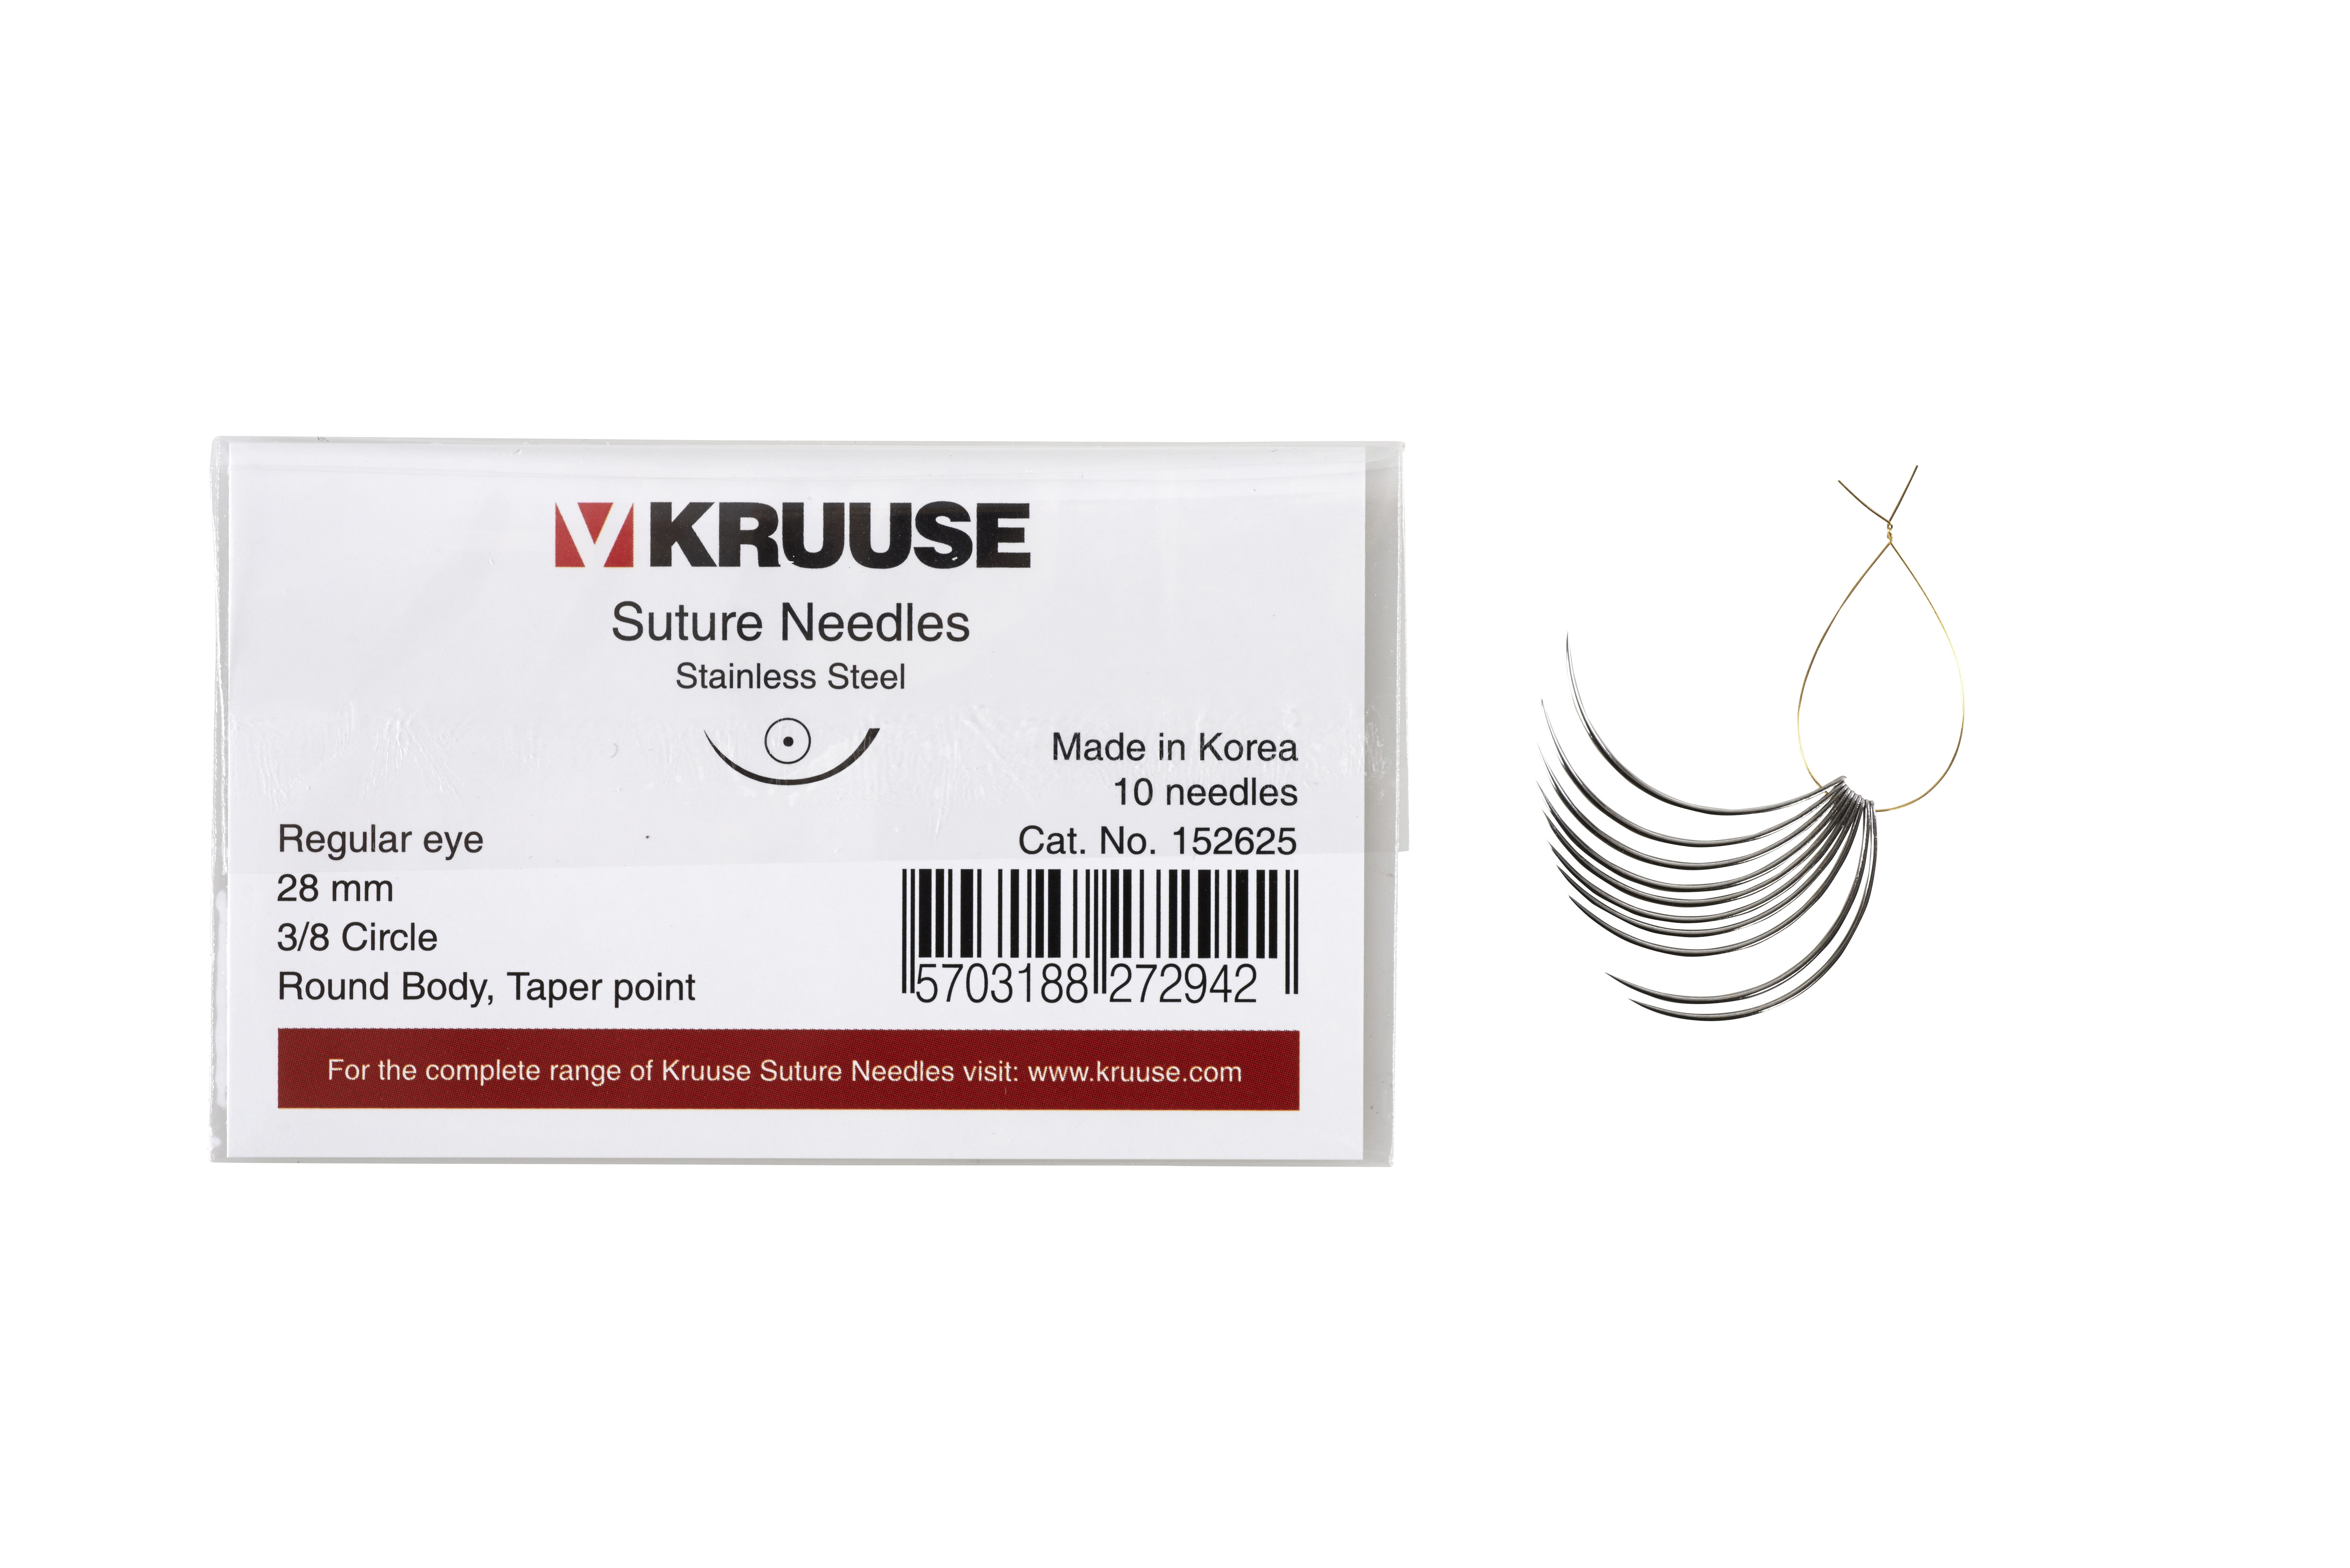 KRUUSE suture needle regular eye, 3/8 circle, round body, taper point, 28 mm, 10/pk